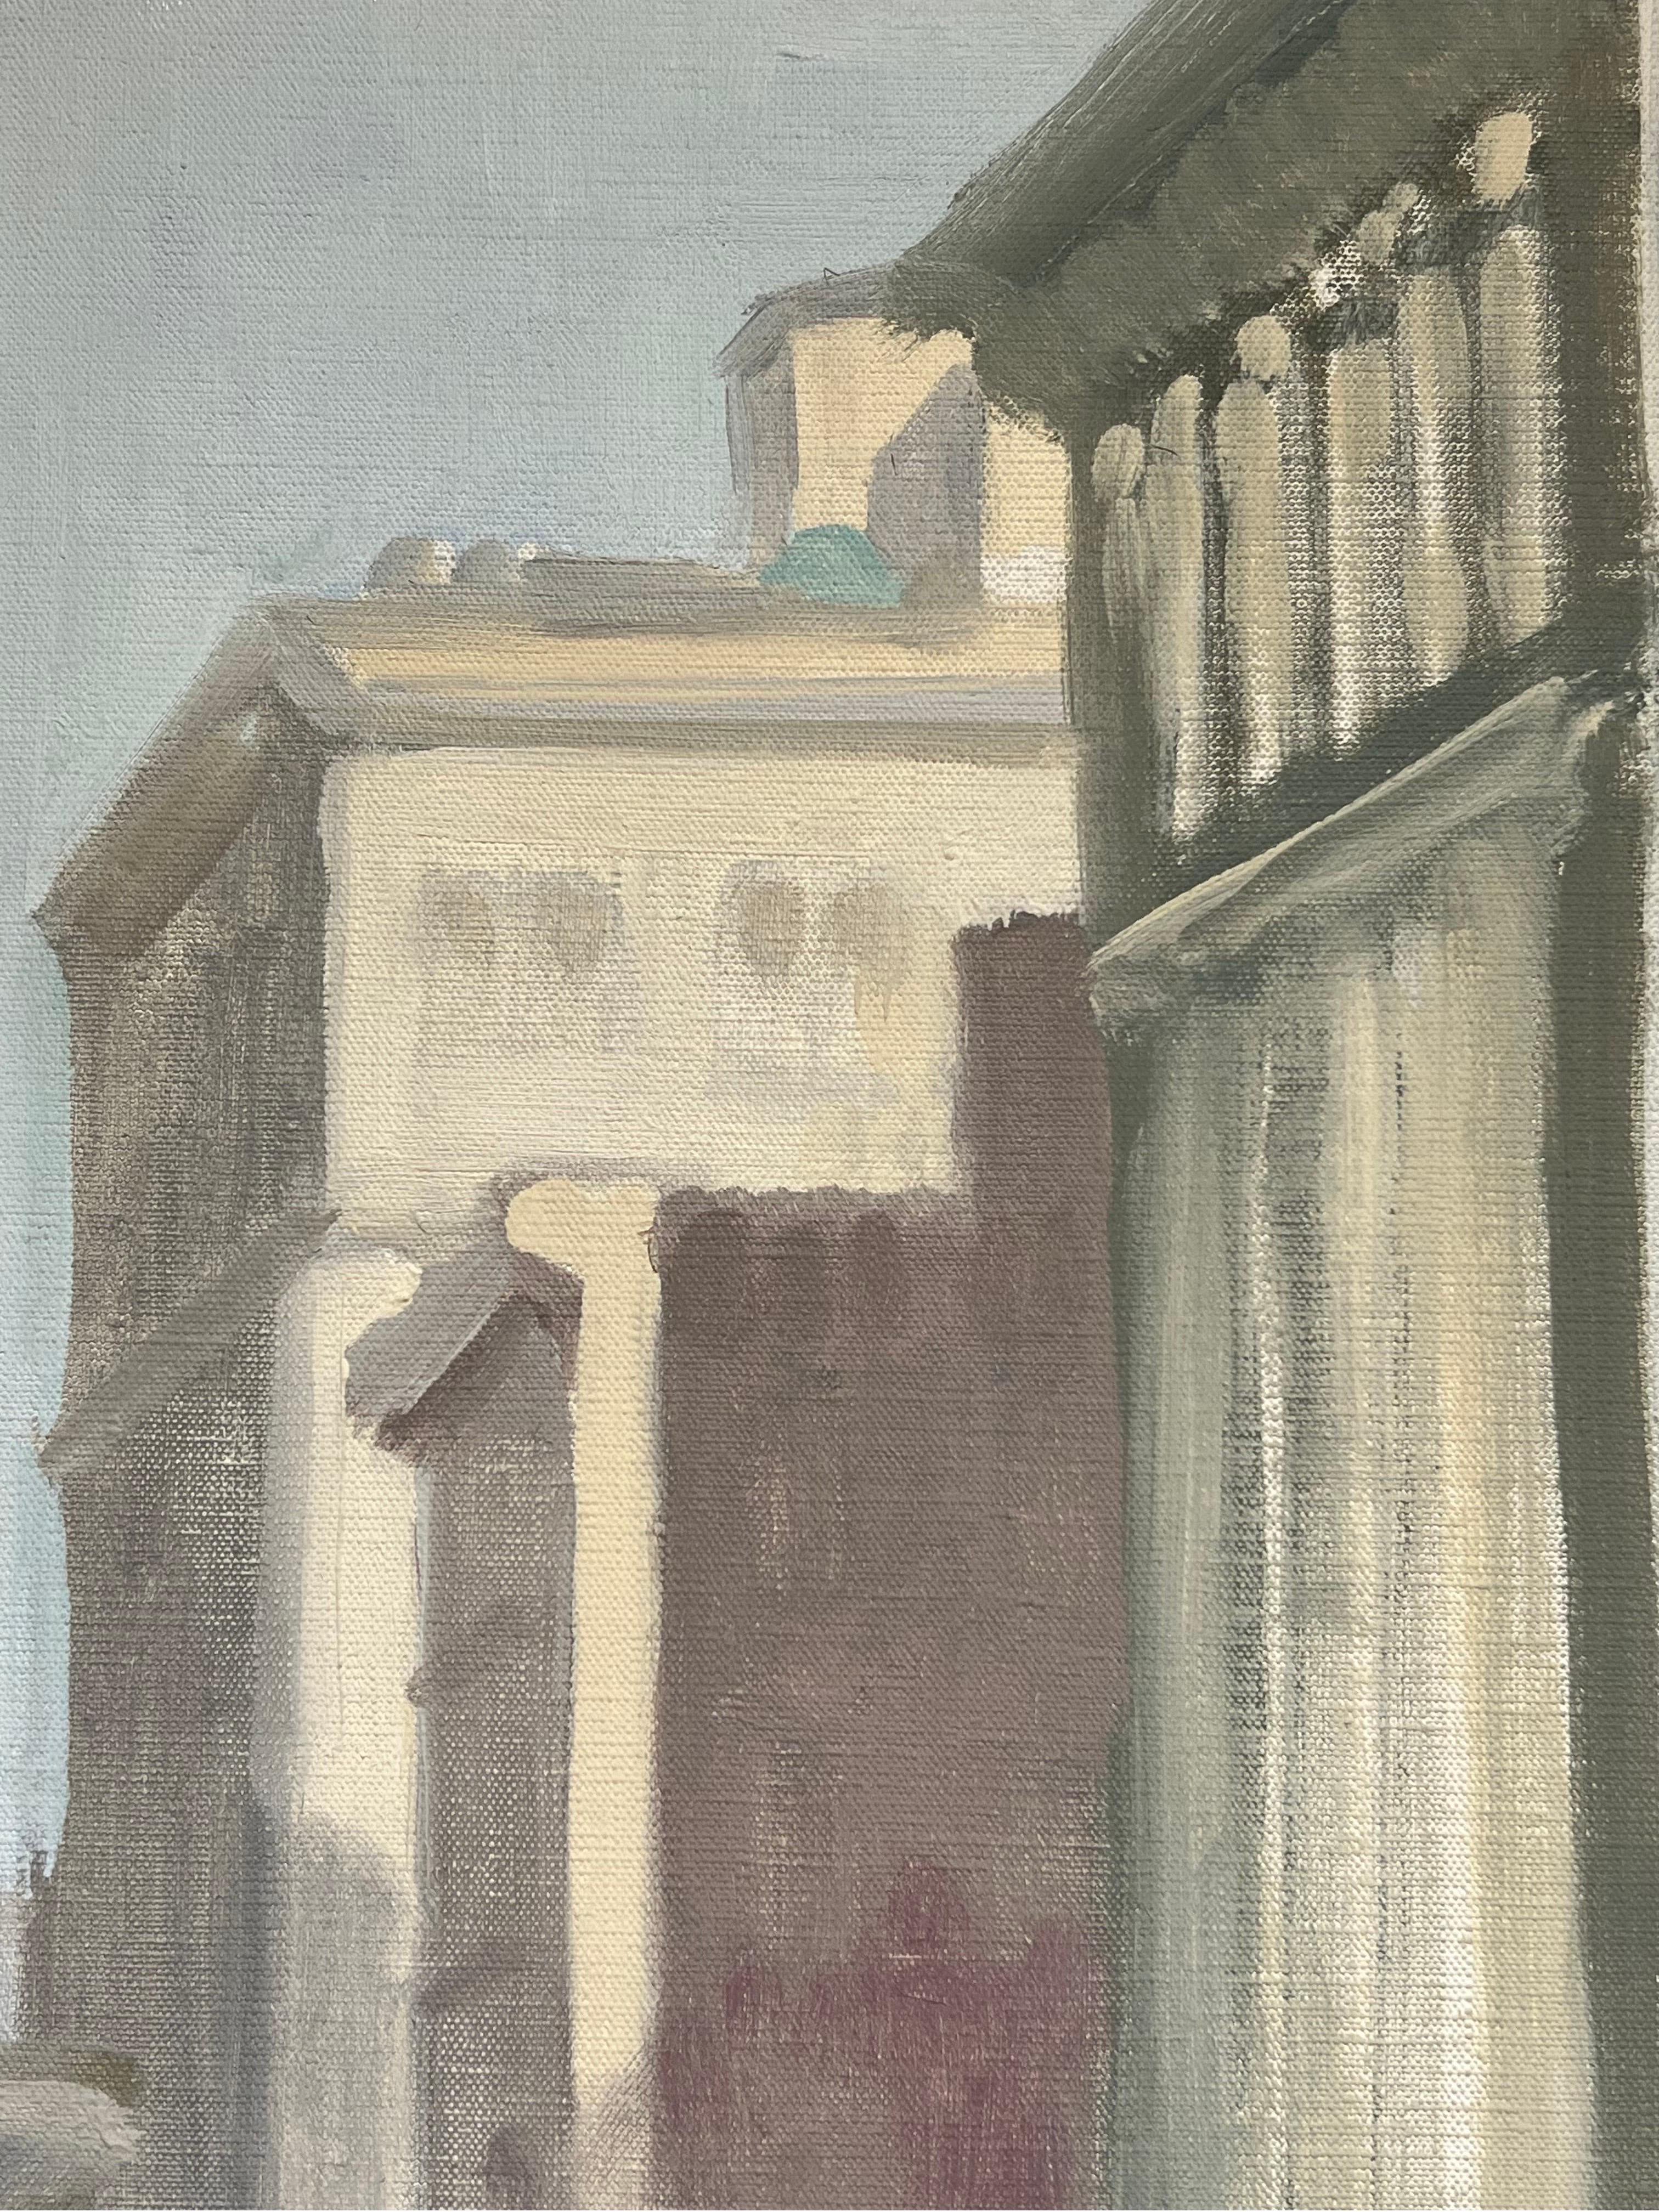 Zum Verkauf steht eine New York City Street, Broadway von Jane Wilson (1924-2015). Jane Wilson war eine wichtige Malerin des Abstrakten Expressionismus. Sie wurde in zahlreichen Museen ausgestellt, darunter das Moma, das Metropolitan Museum und das